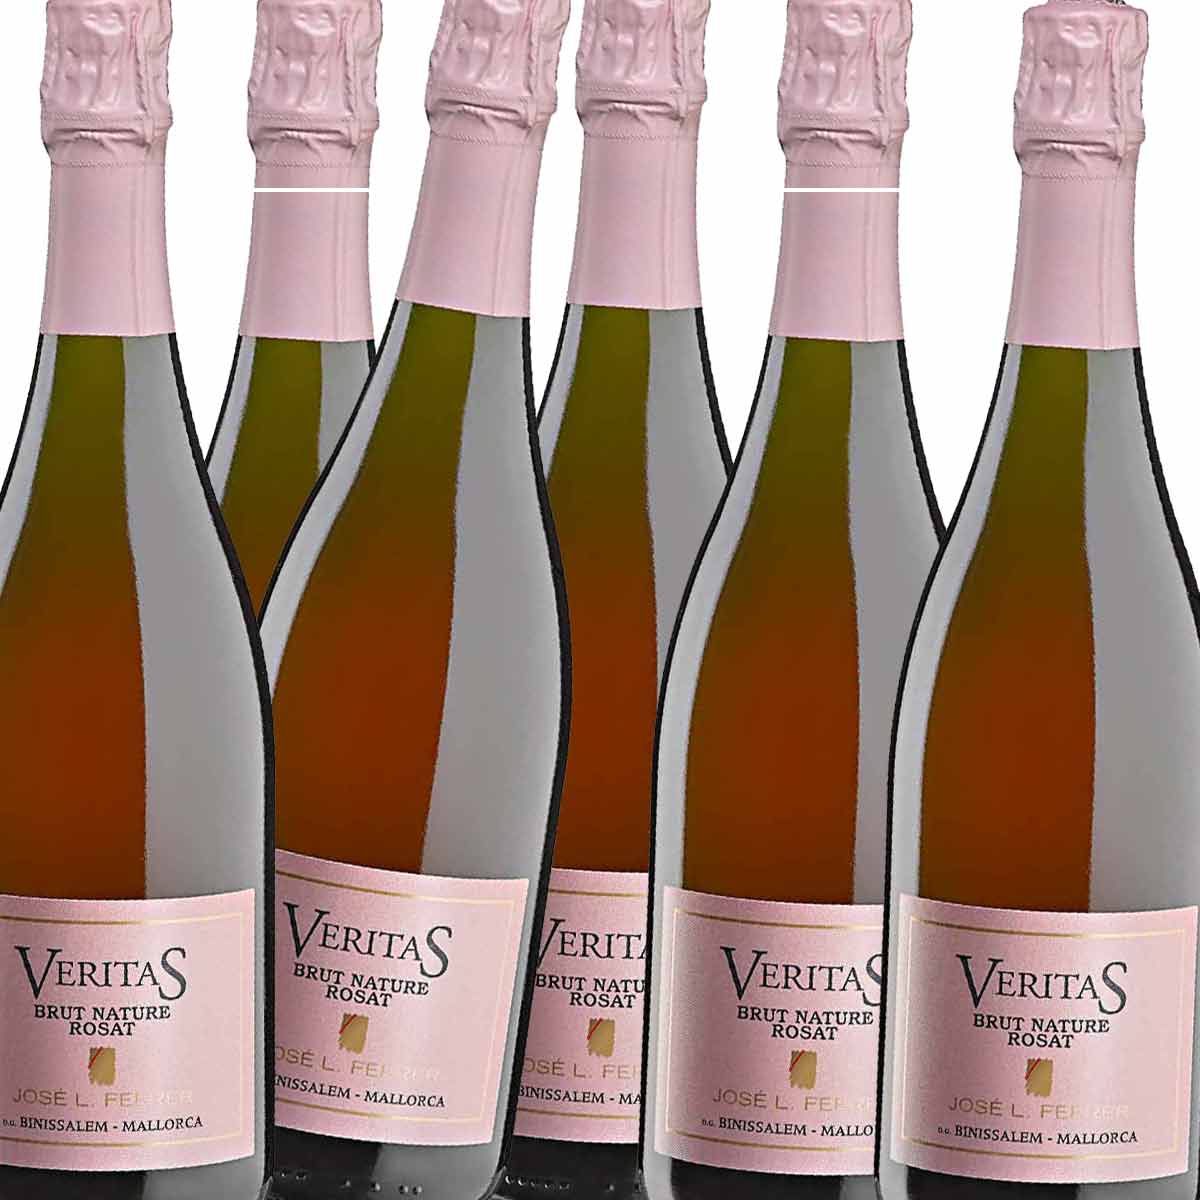 6 x Ferrer Veritas Brut Nature champagne rosé D.O. Binissalem